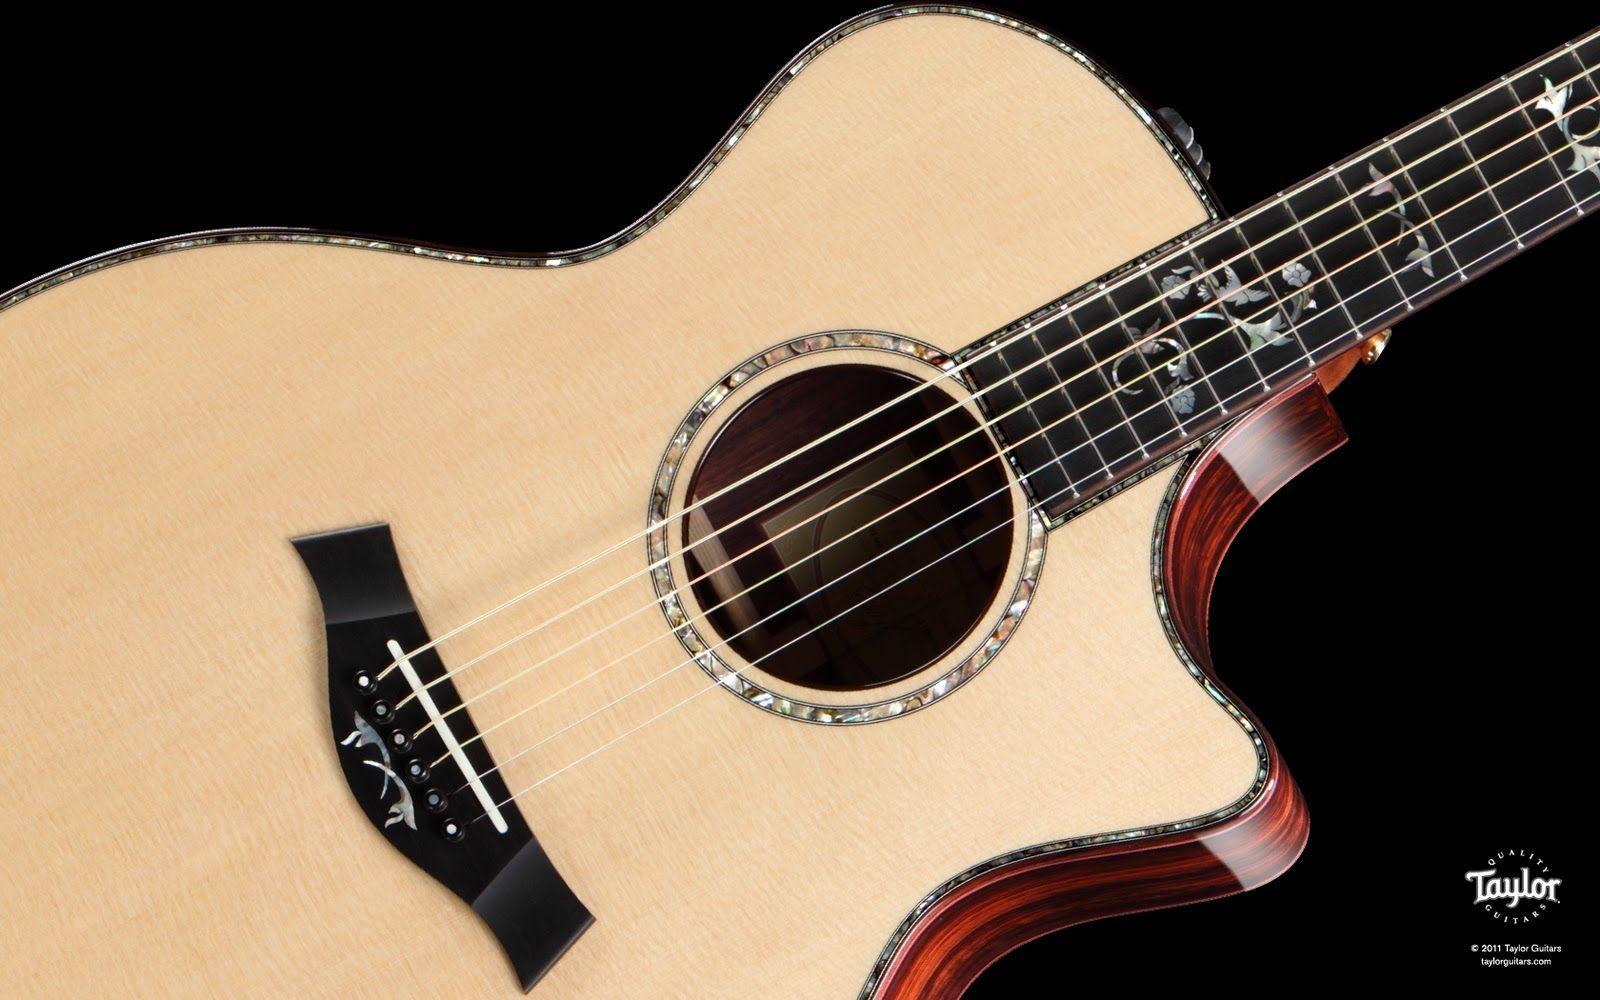 Taylor Guitars: Taylor Guitars